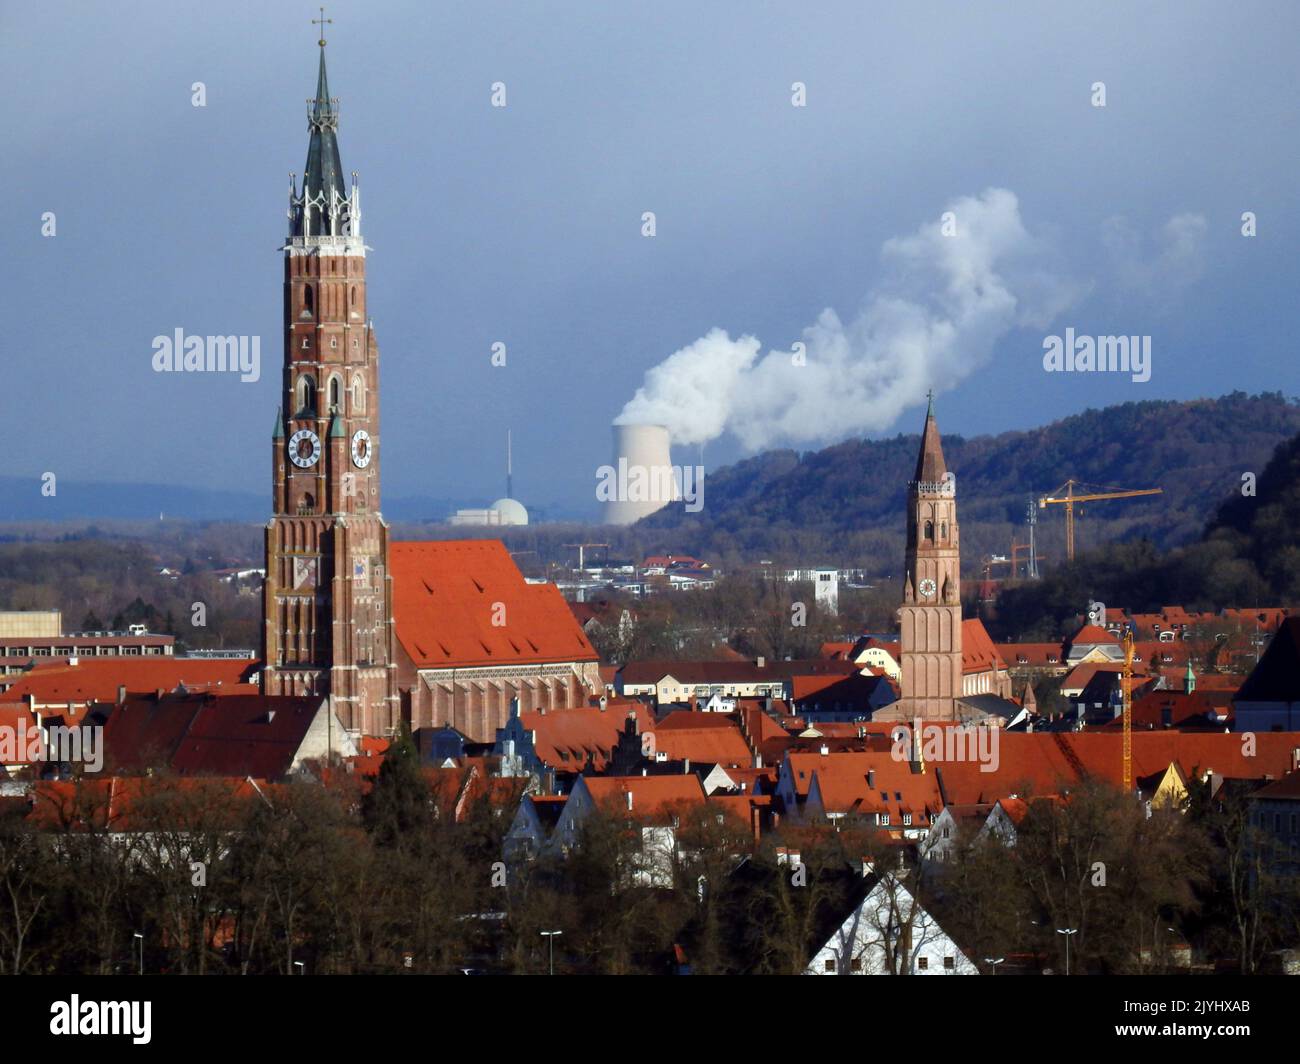 Landshut with nuclear power plant Isar I & II, Germany, Bavaria, Landshut Stock Photo